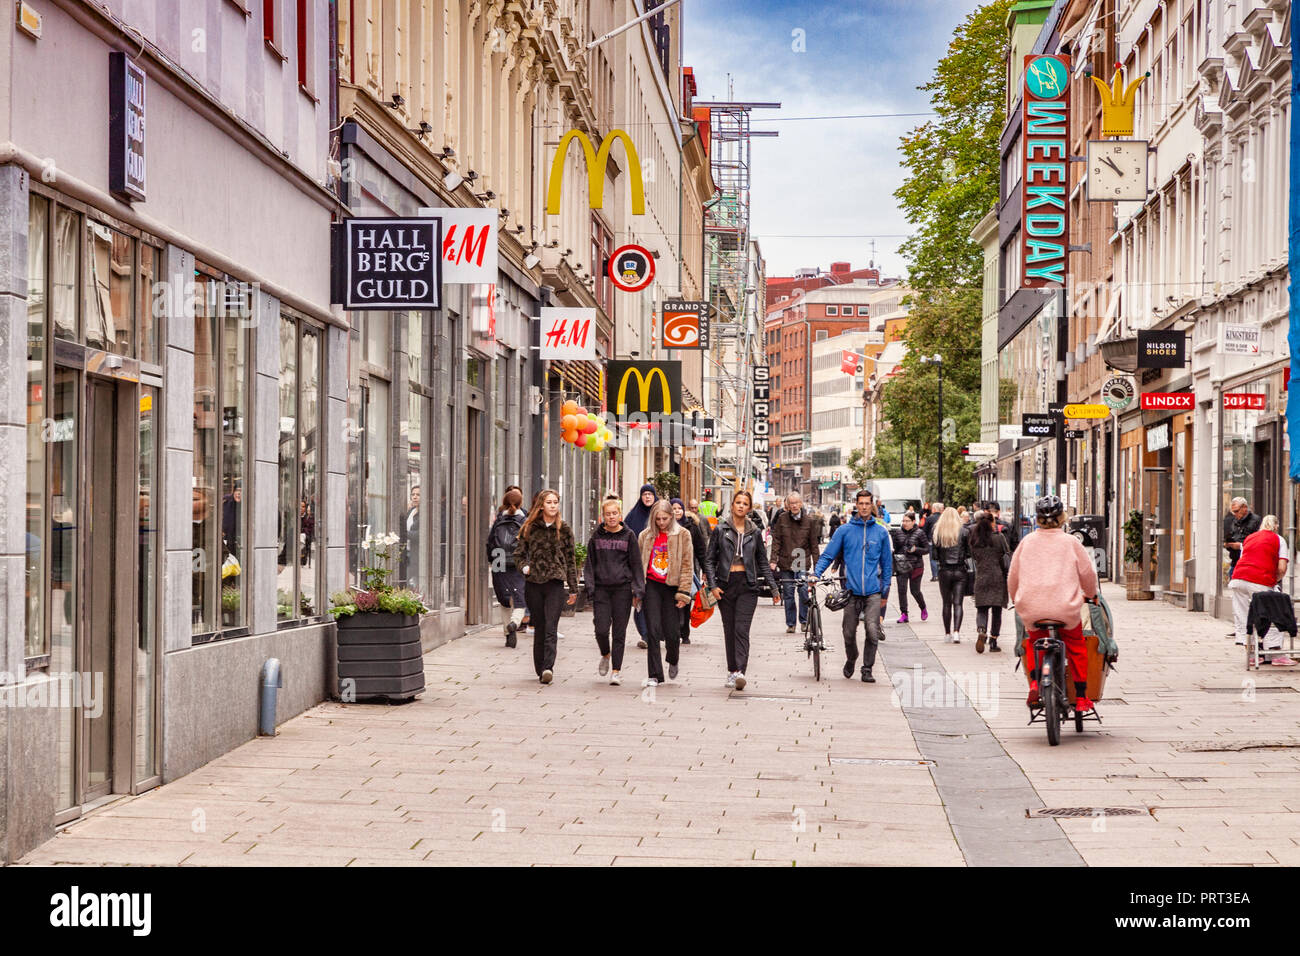 14. September 2018: Göteborg, Schweden - Kungsgatan, der Haupteinkaufsstraße in Göteborg, überfüllt mit Käufern. Stockfoto